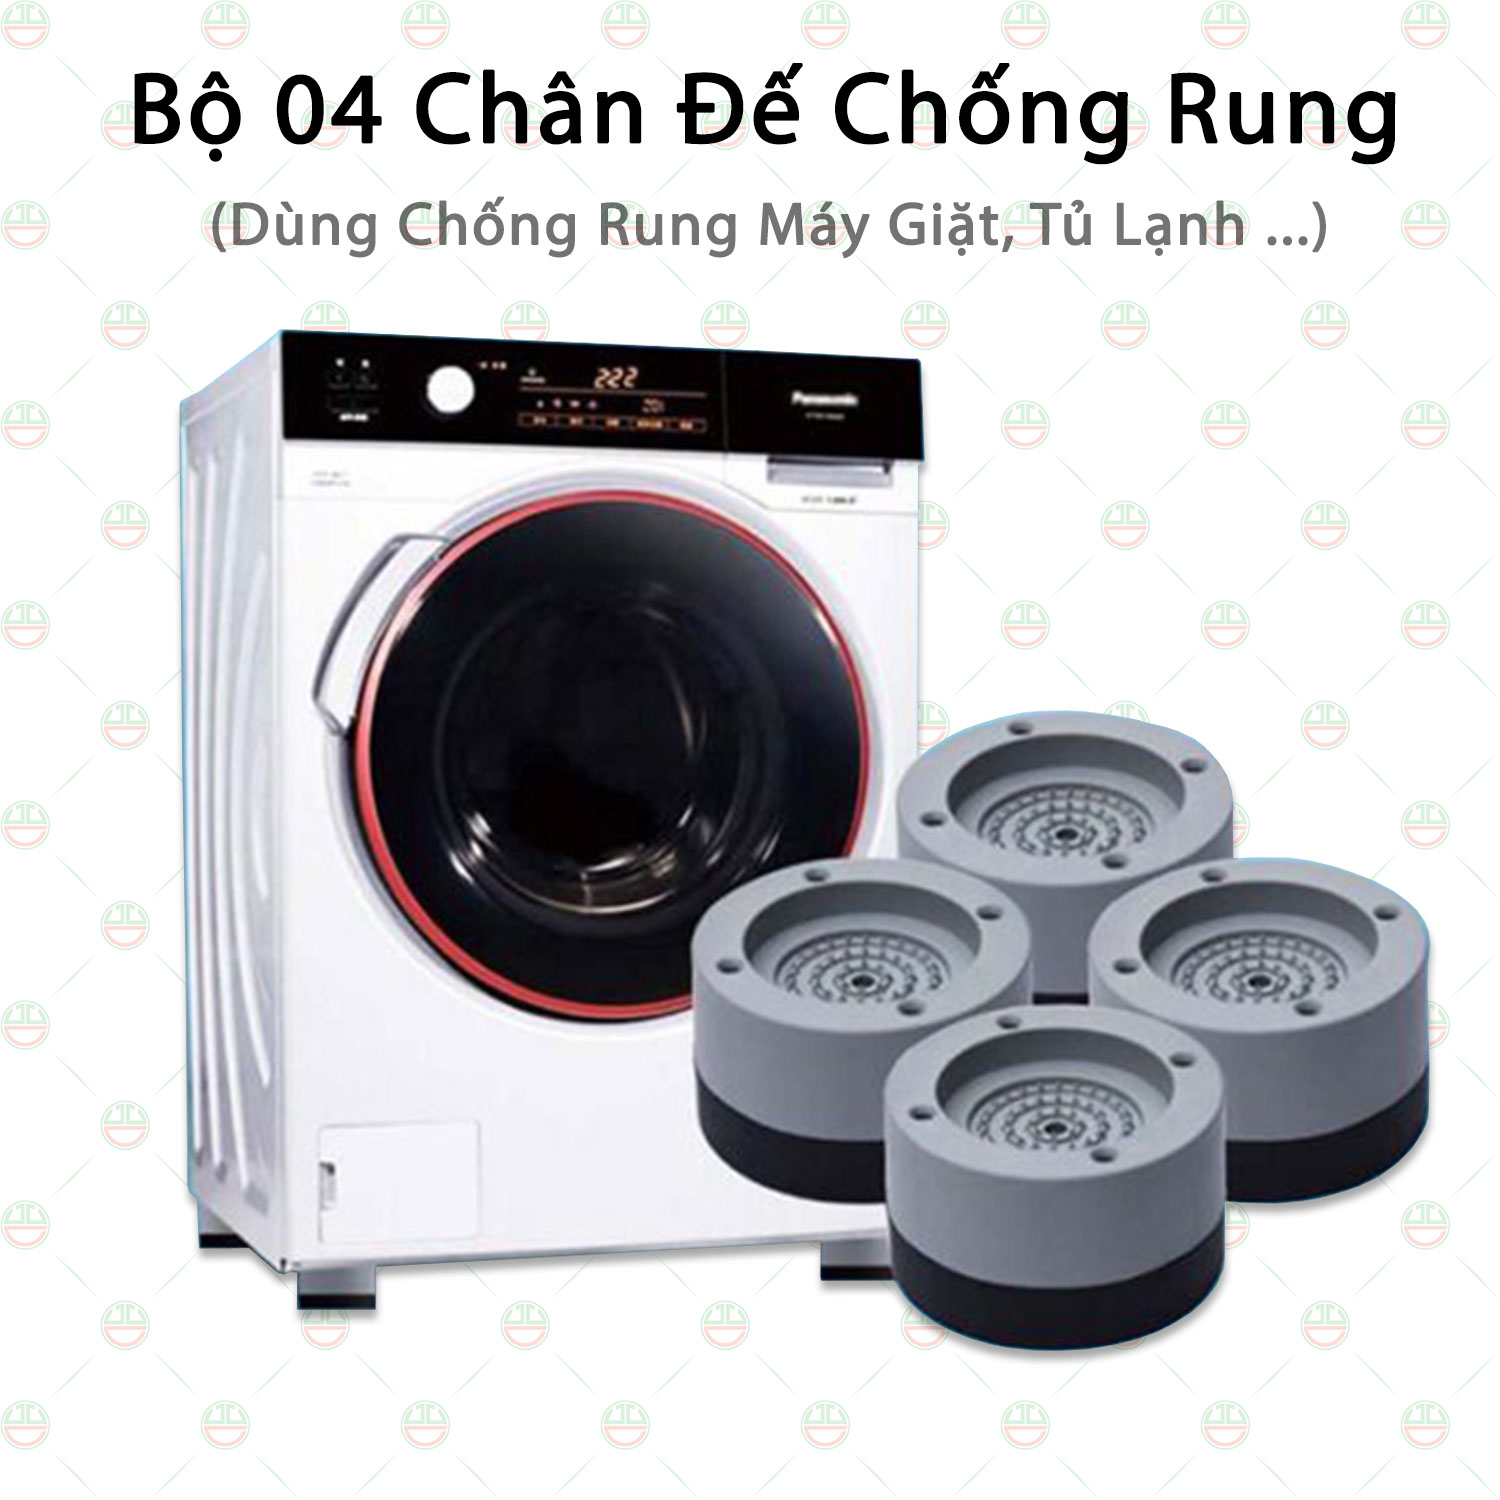 Bộ 04 Chân Đế KhoNCC Chống Rung Lắc, Giảm Ồn Máy Giặt - Tủ Lạnh - Hàng Chính Hãng - KLVQ-5214-BCRMG